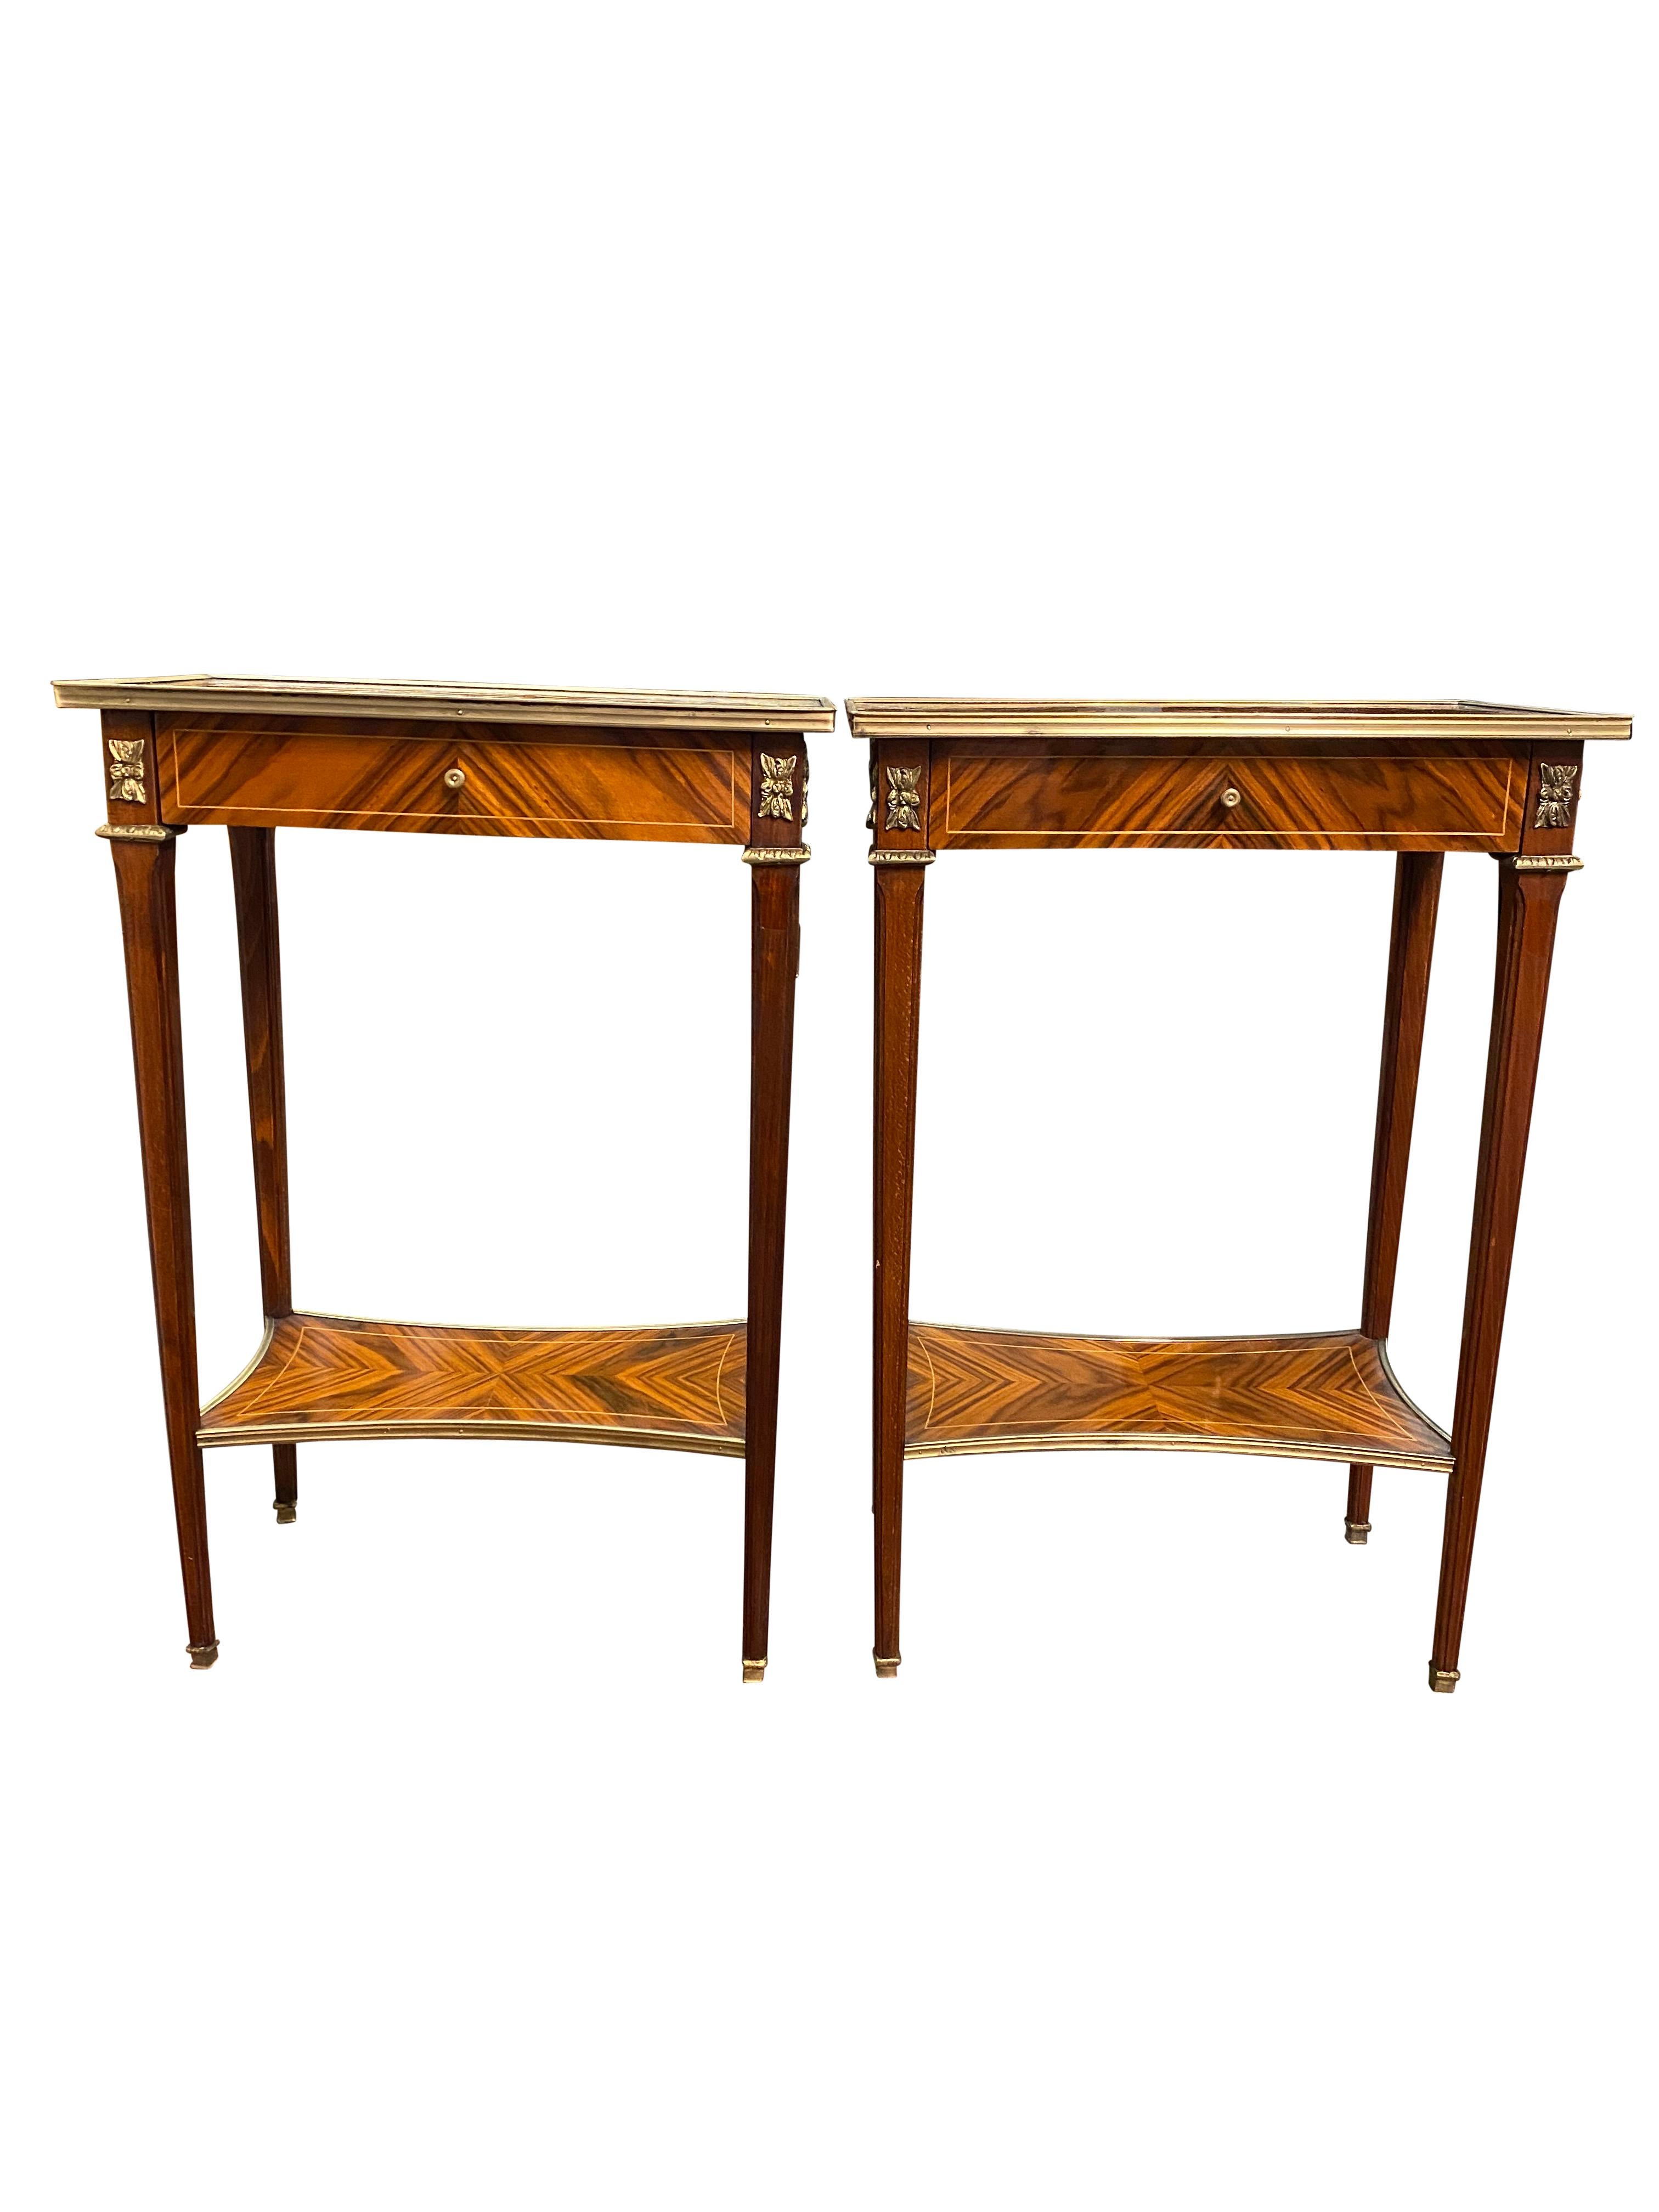 Une paire étonnante de tables d'appoint de style Regency anglais du 20e siècle. Un design magnifique et élégant, parfait pour les intérieurs modernes.